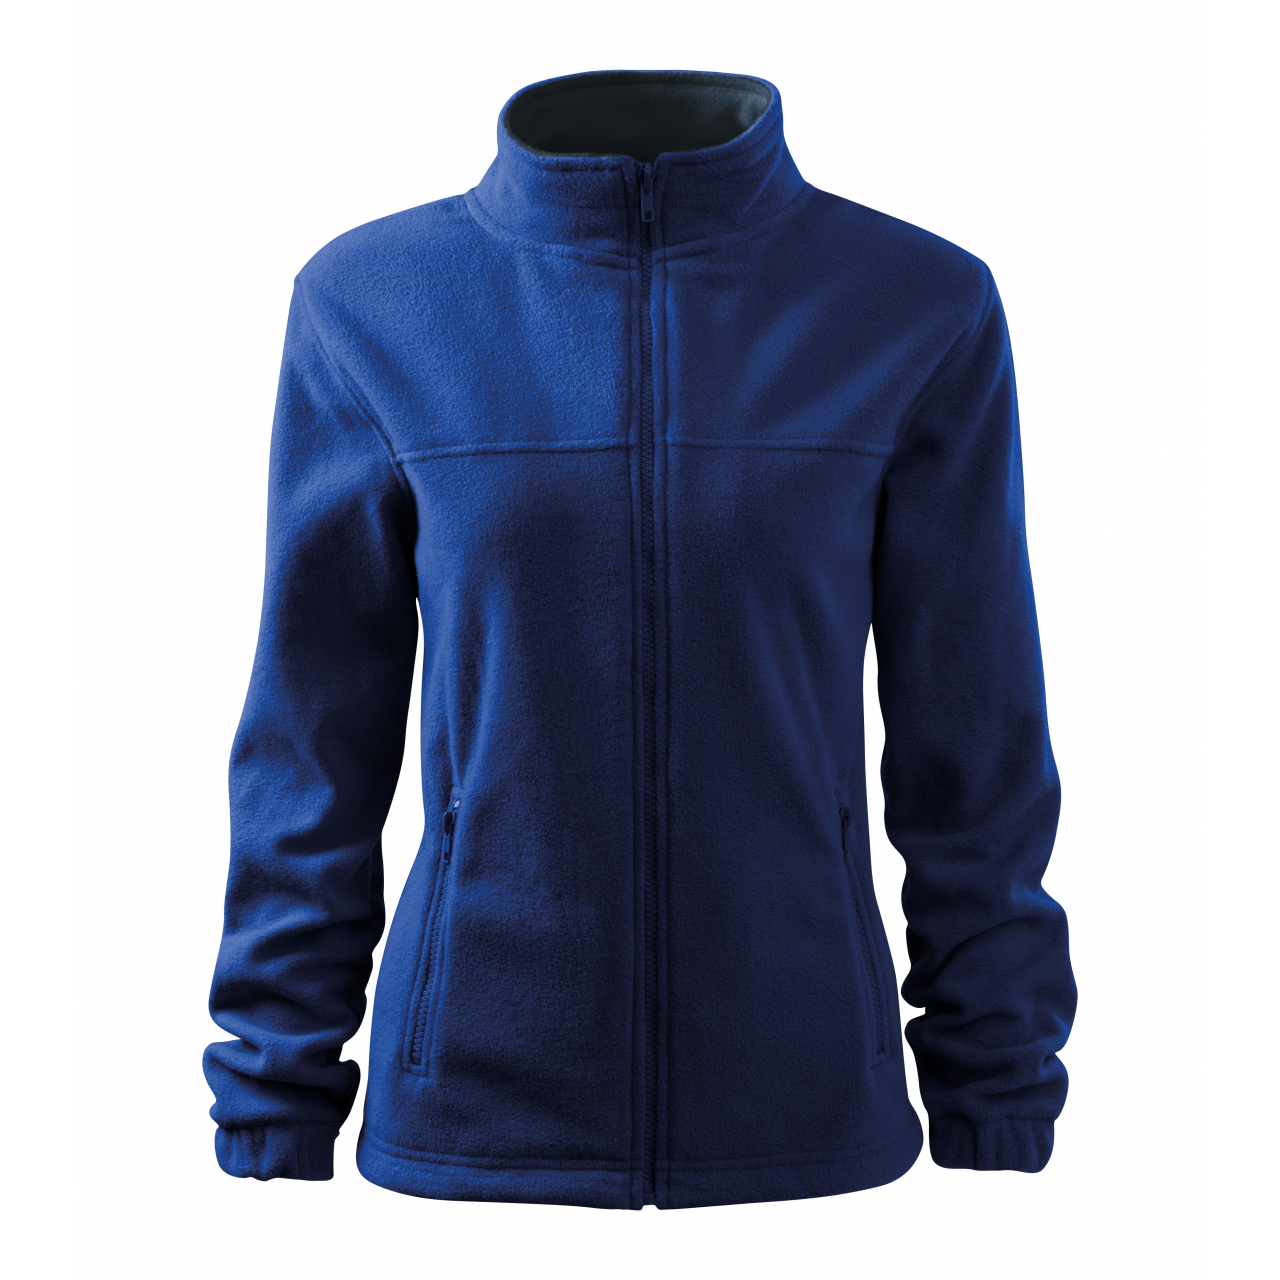 Bunda dámská Malfini Jacket - modrá, XL